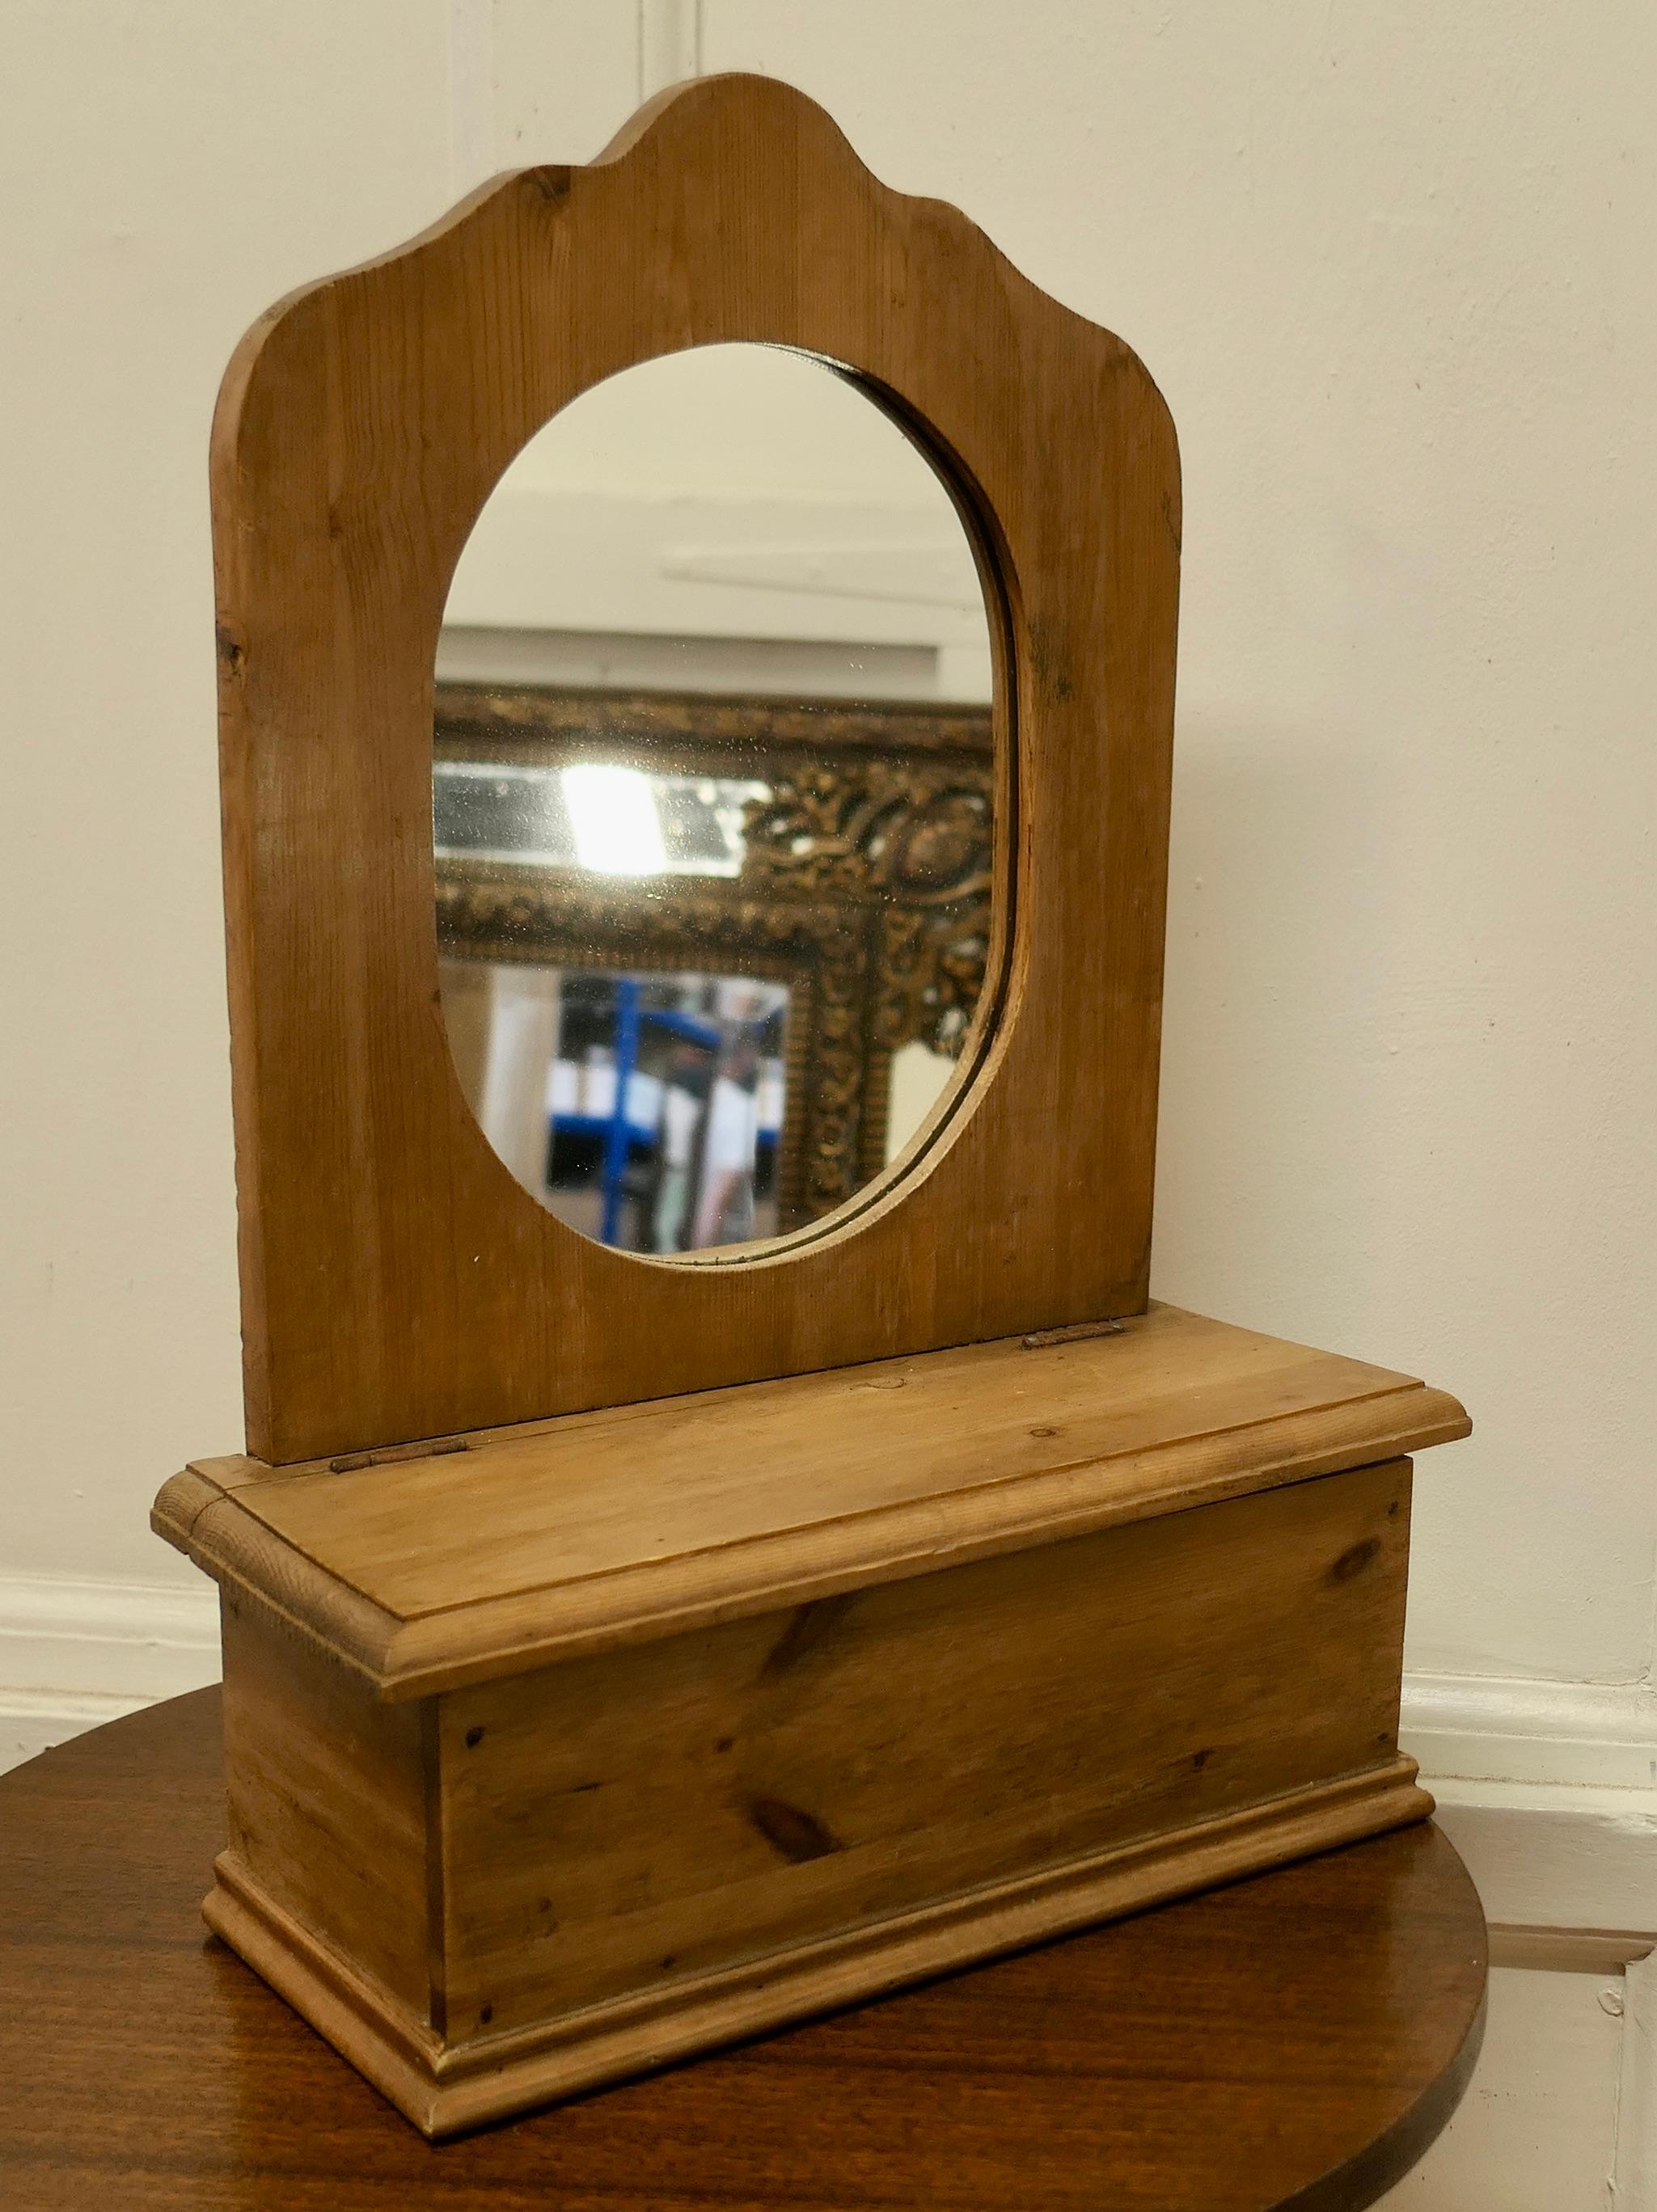 Miroir de toilette ou de vanité en pin
 
Le dos du miroir est entouré d'une forme festonnée et d'un verre ovale.
En dessous se trouve un compartiment utile doté d'un couvercle à soulever
Le miroir mesure 14